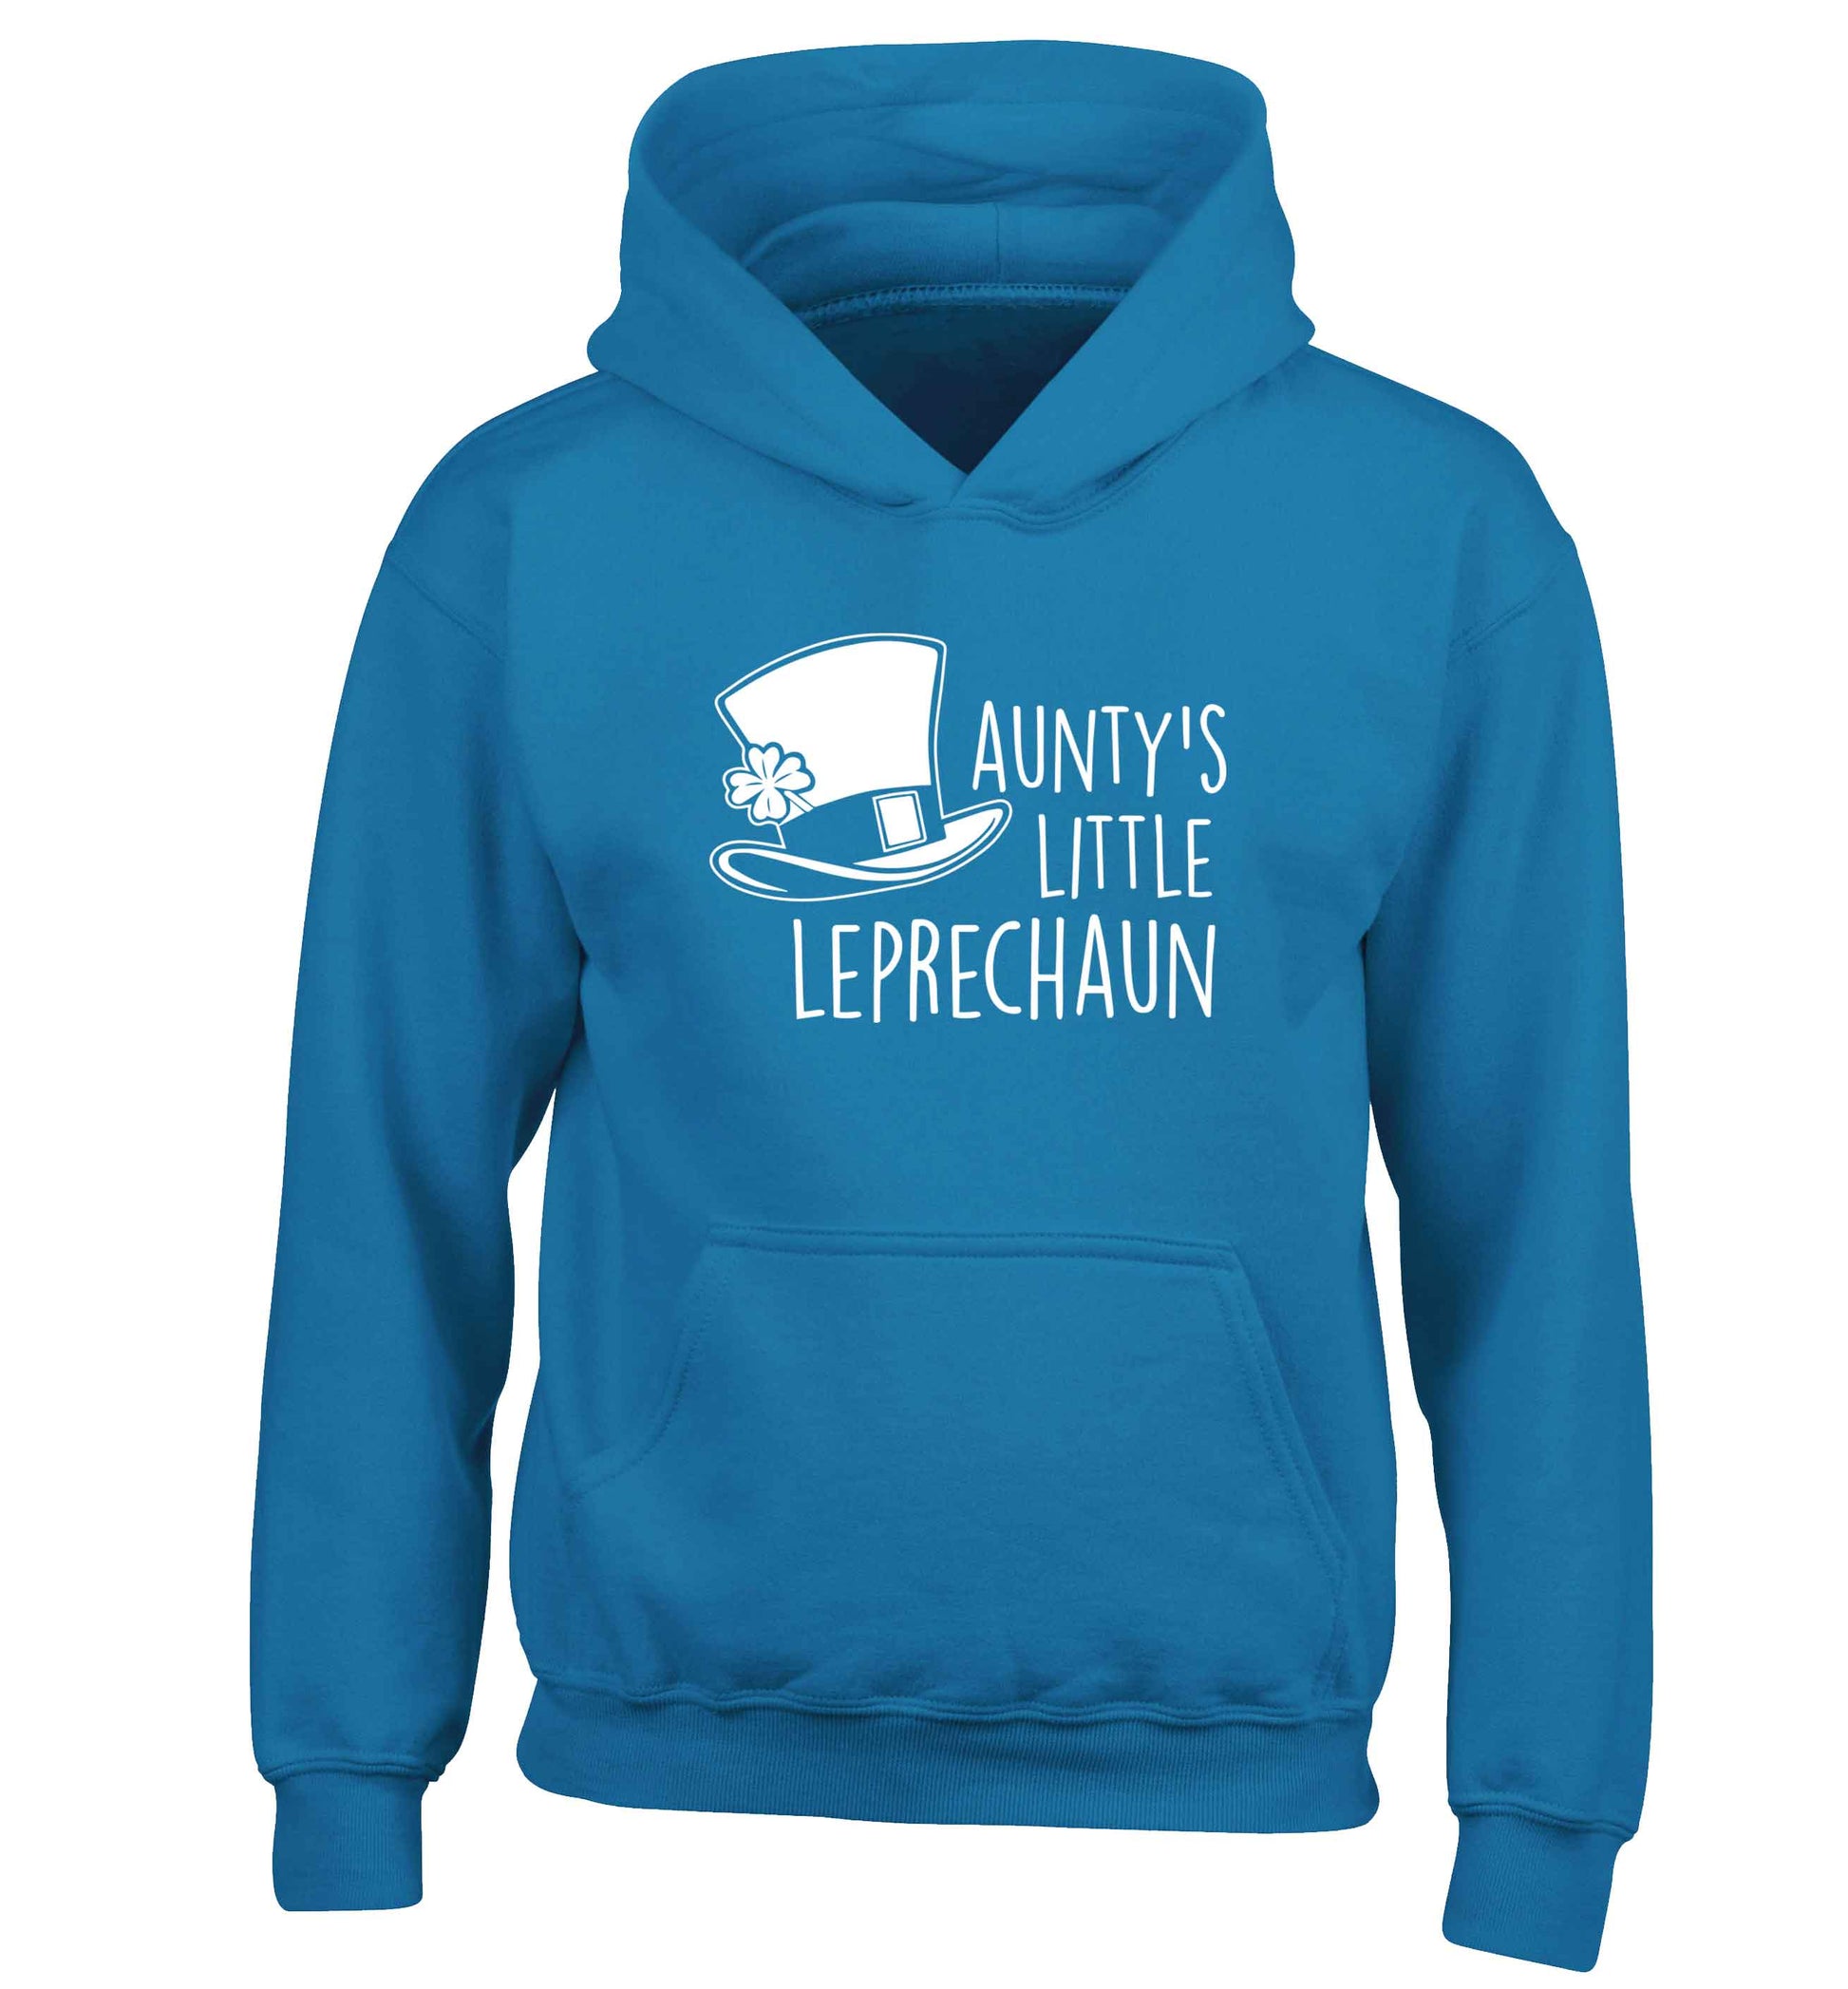 Aunty's little leprechaun children's blue hoodie 12-13 Years